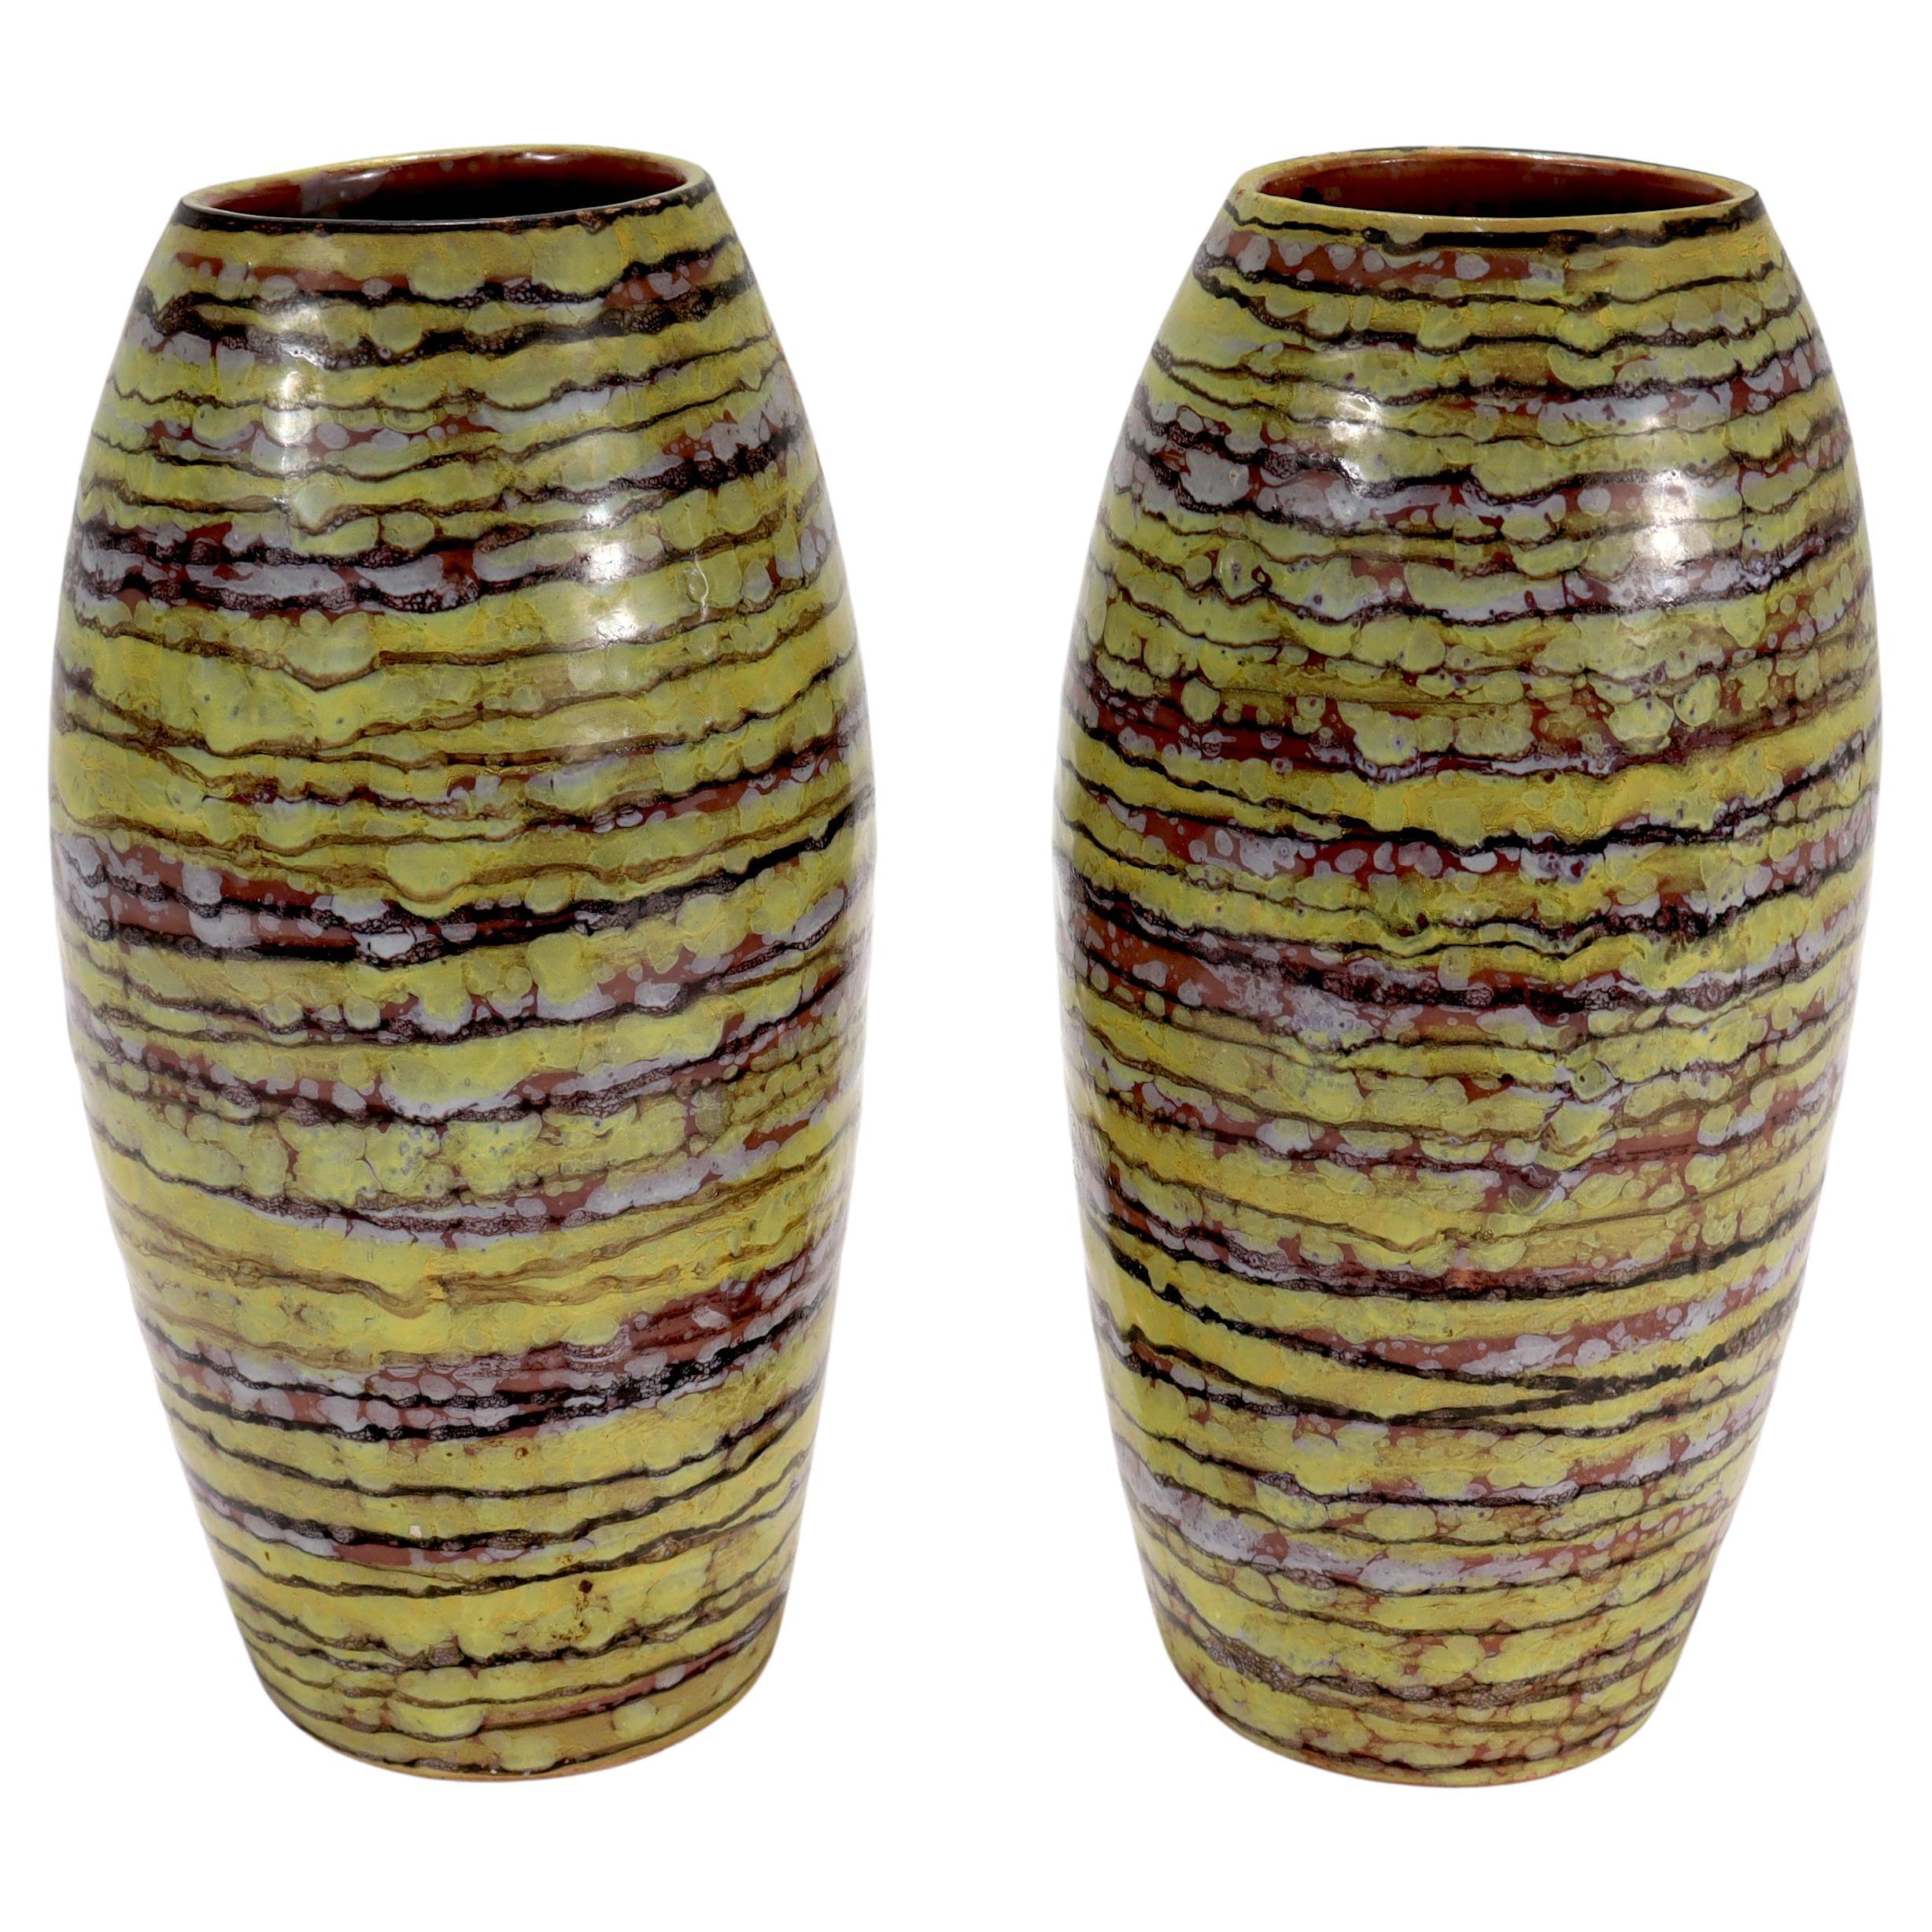 Ein schönes Paar moderner italienischer Terrakotta-Vasen aus der Jahrhundertmitte.

Beide Vasen sind überwiegend gelb glasiert, mit bräunlich-roten Streifen und weißen Flecken.

Im Stil von Guido Gambone oder Marcello Fantoni

Auf dem Sockel